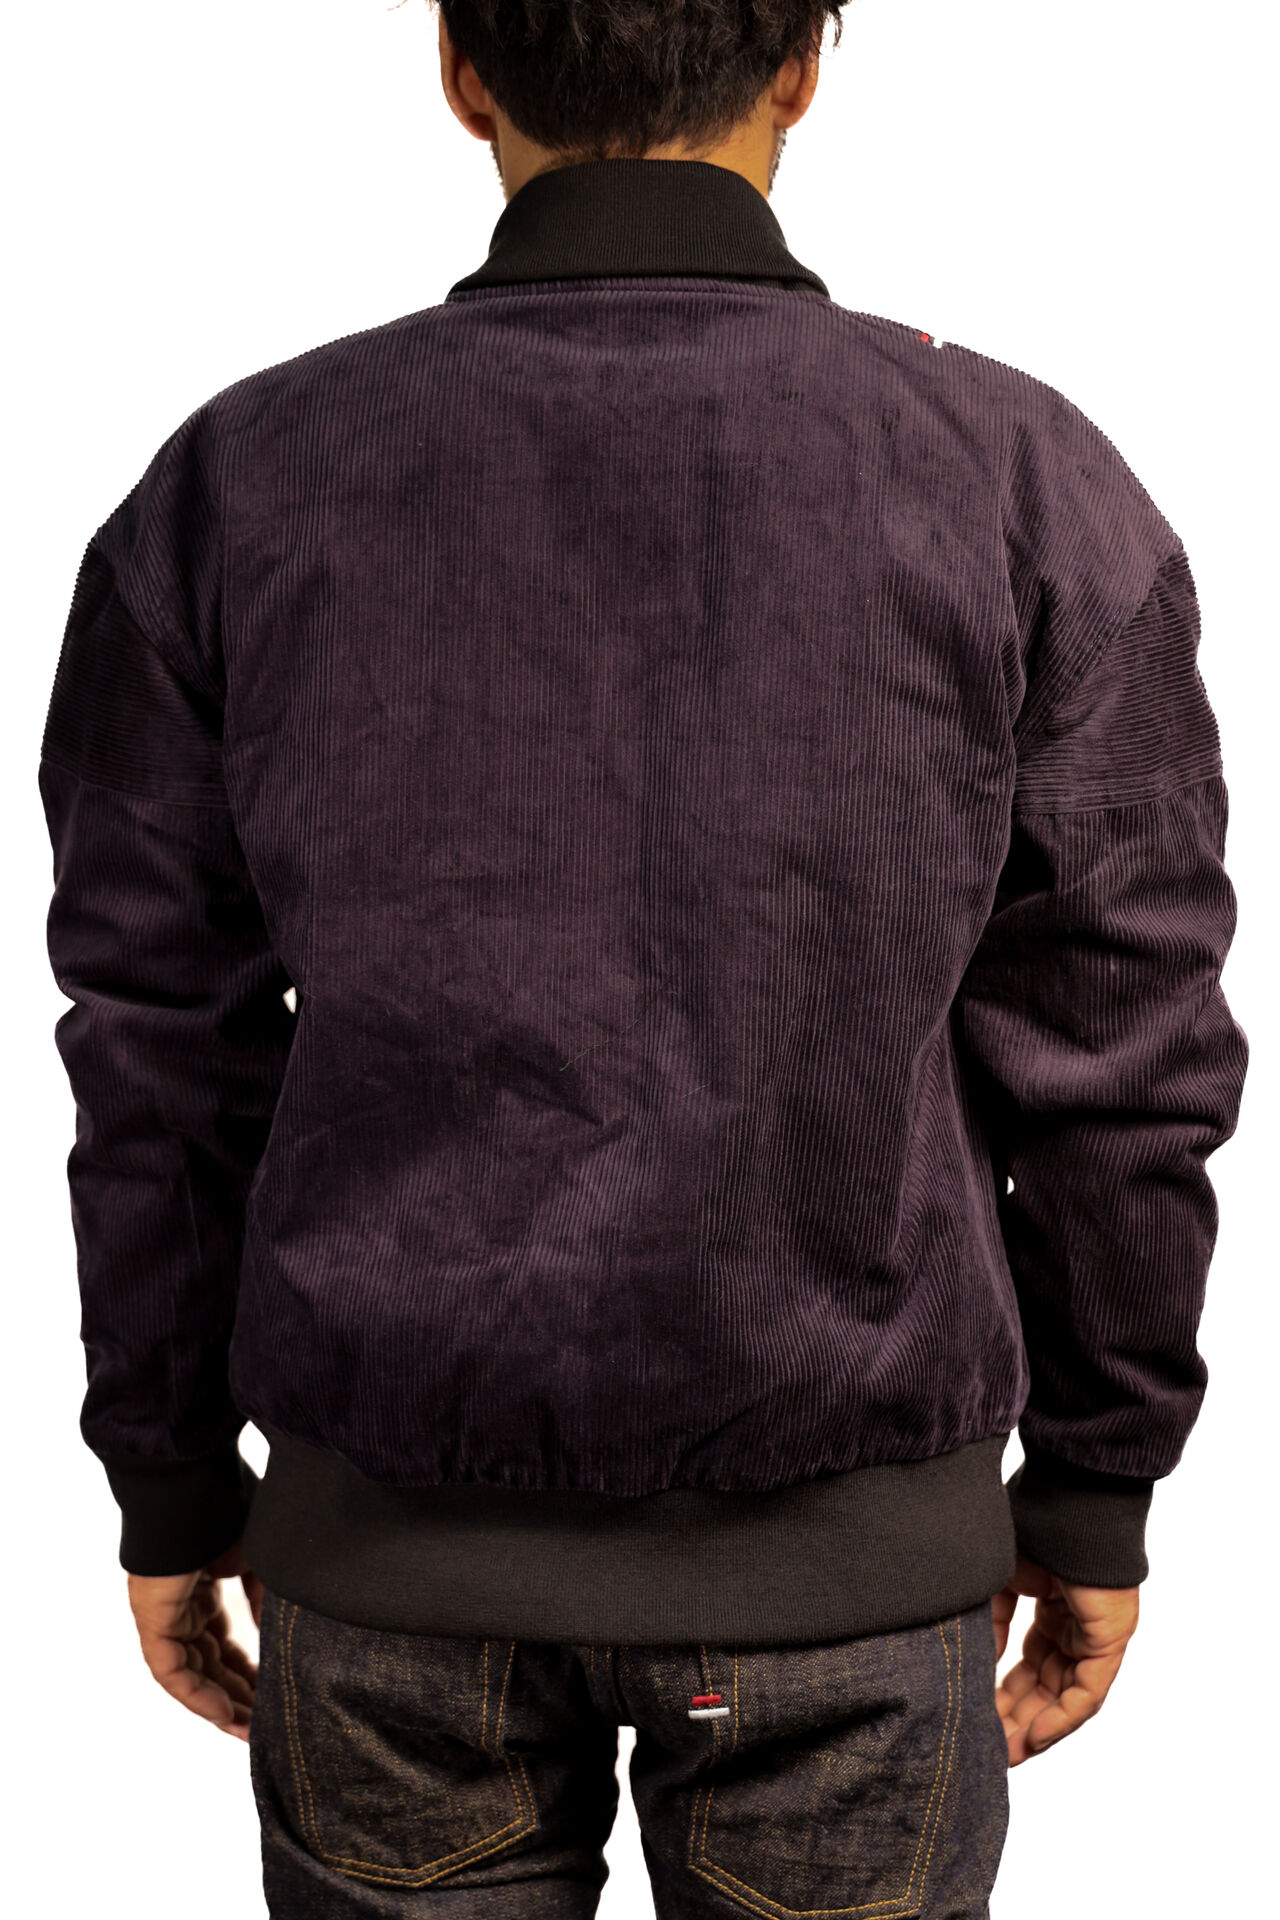 TNK501SZA "Sazanami" Corduroy Jacket (Indigo),, large image number 3